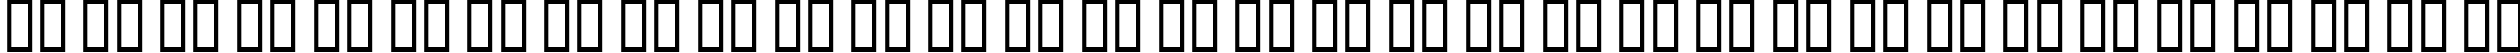 Пример написания русского алфавита шрифтом AddJazz